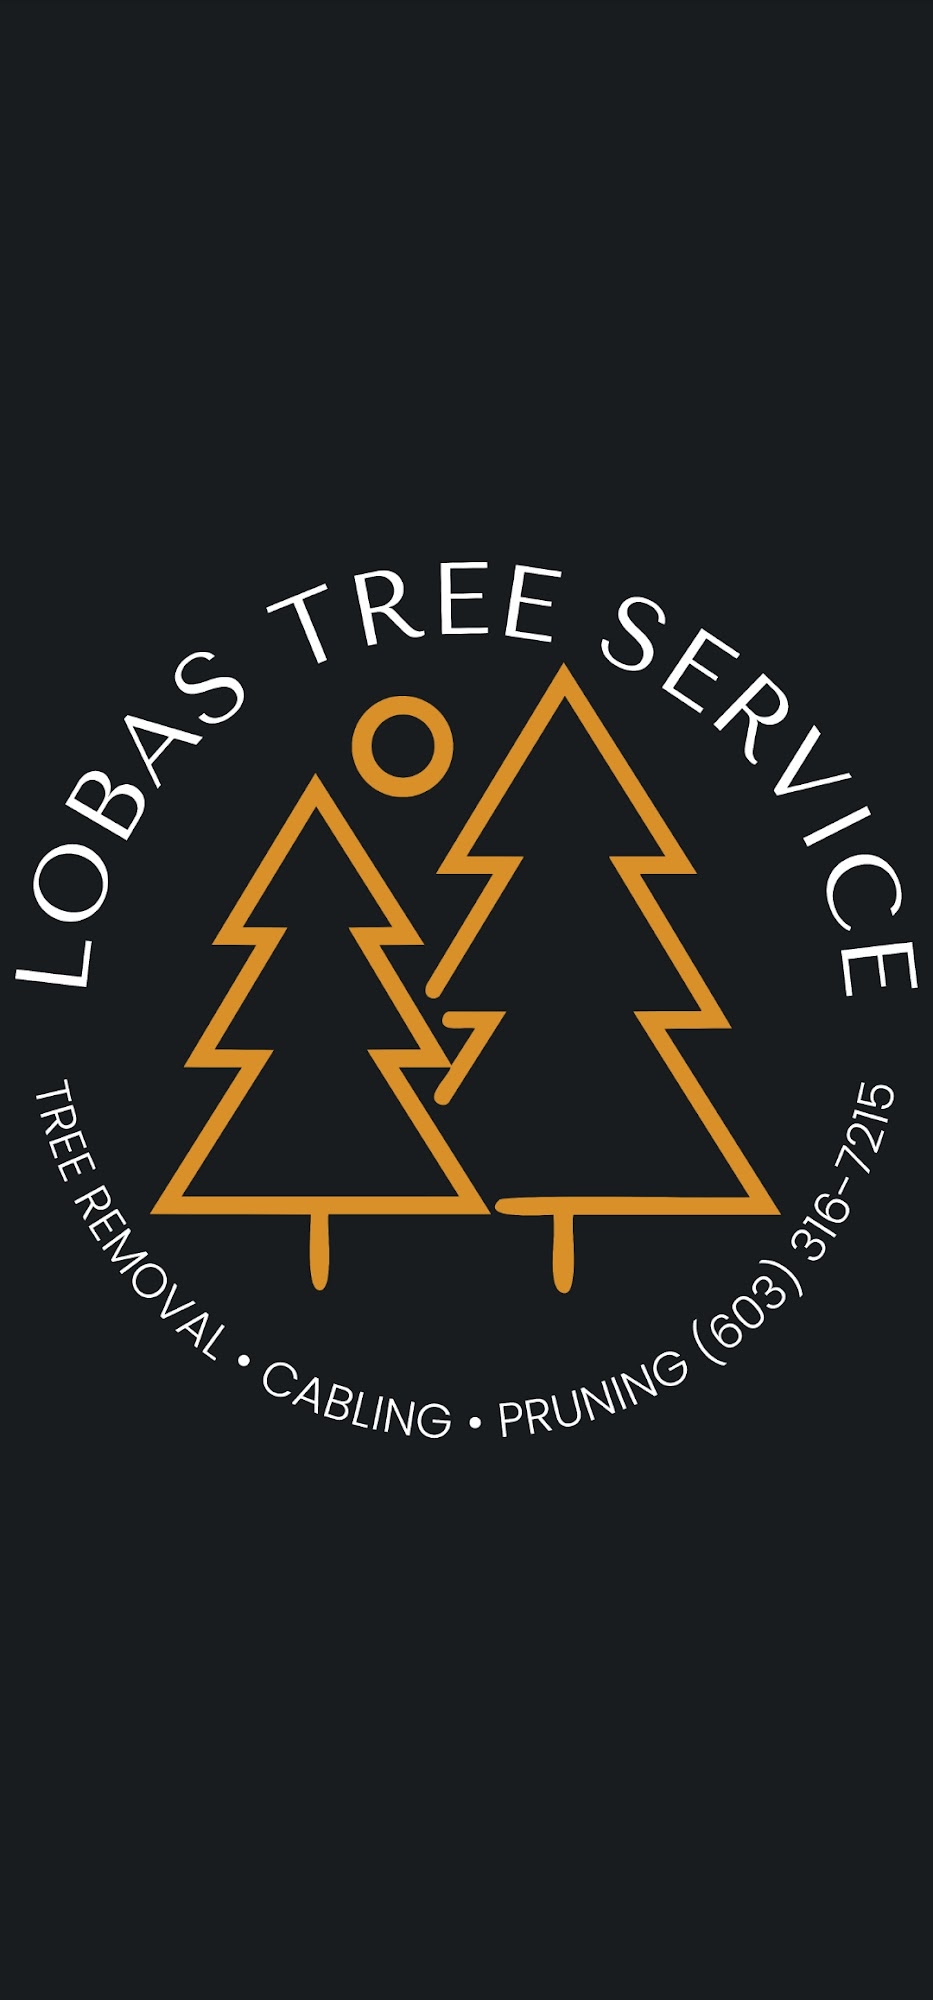 Lobas Tree Service LLC 8 Cedar Ridge Dr, New Ipswich New Hampshire 03071